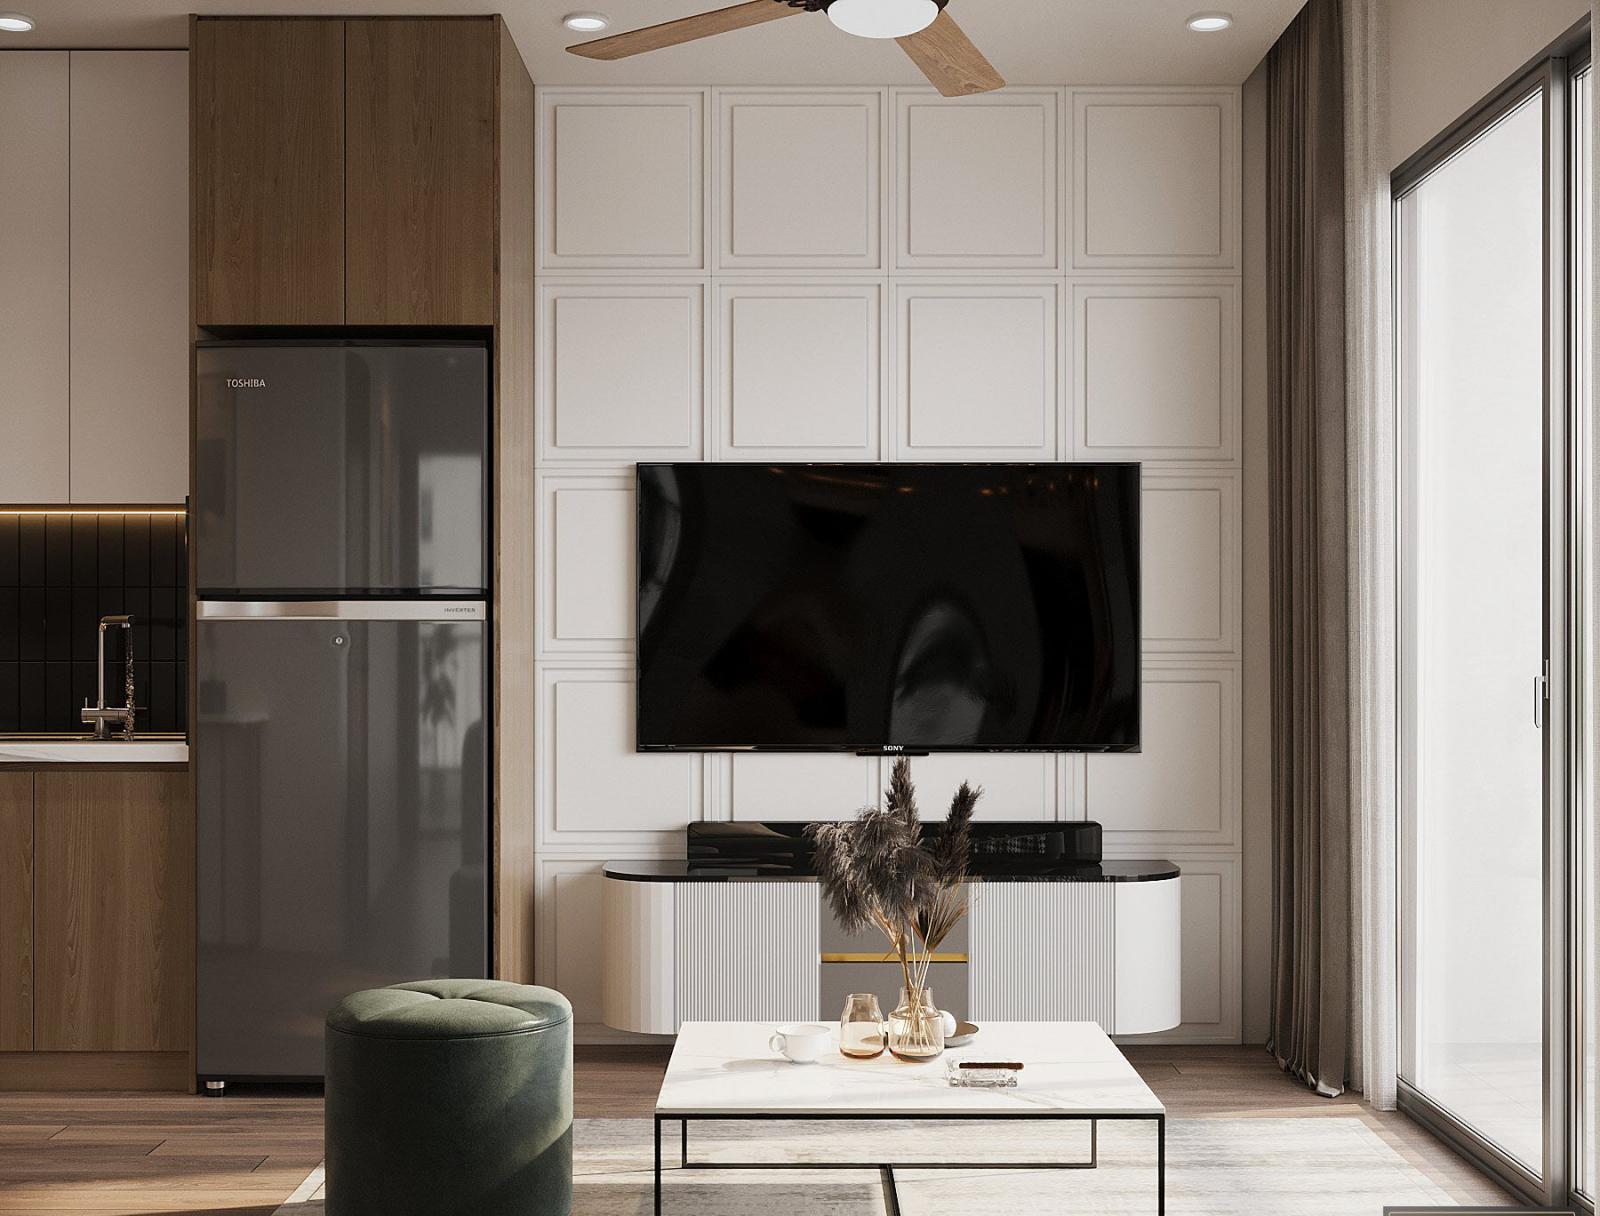 Không gian nấu nướng được thiết kế liền kề, liên thông với phòng khách nhằm tận dụng tối đa ánh sáng tự nhiên từ ban công, đồng thời tăng tính kết nối giữa các thành viên